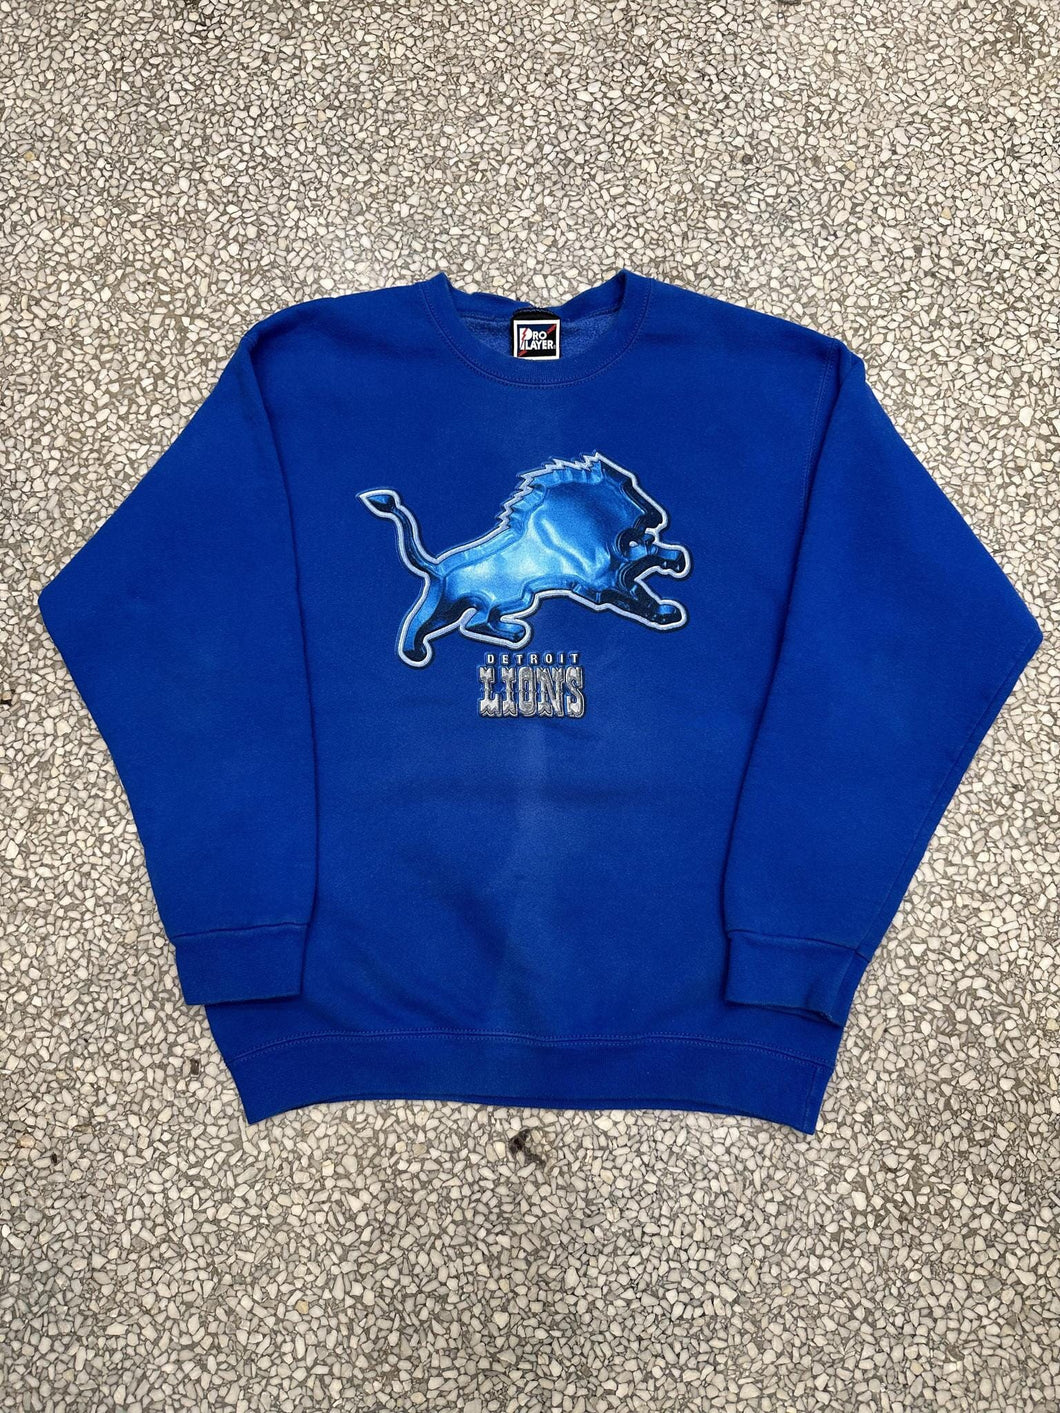 Detroit Lions Vintage 90s Chrome Lion Crewneck Faded Blue ABC Vintage 